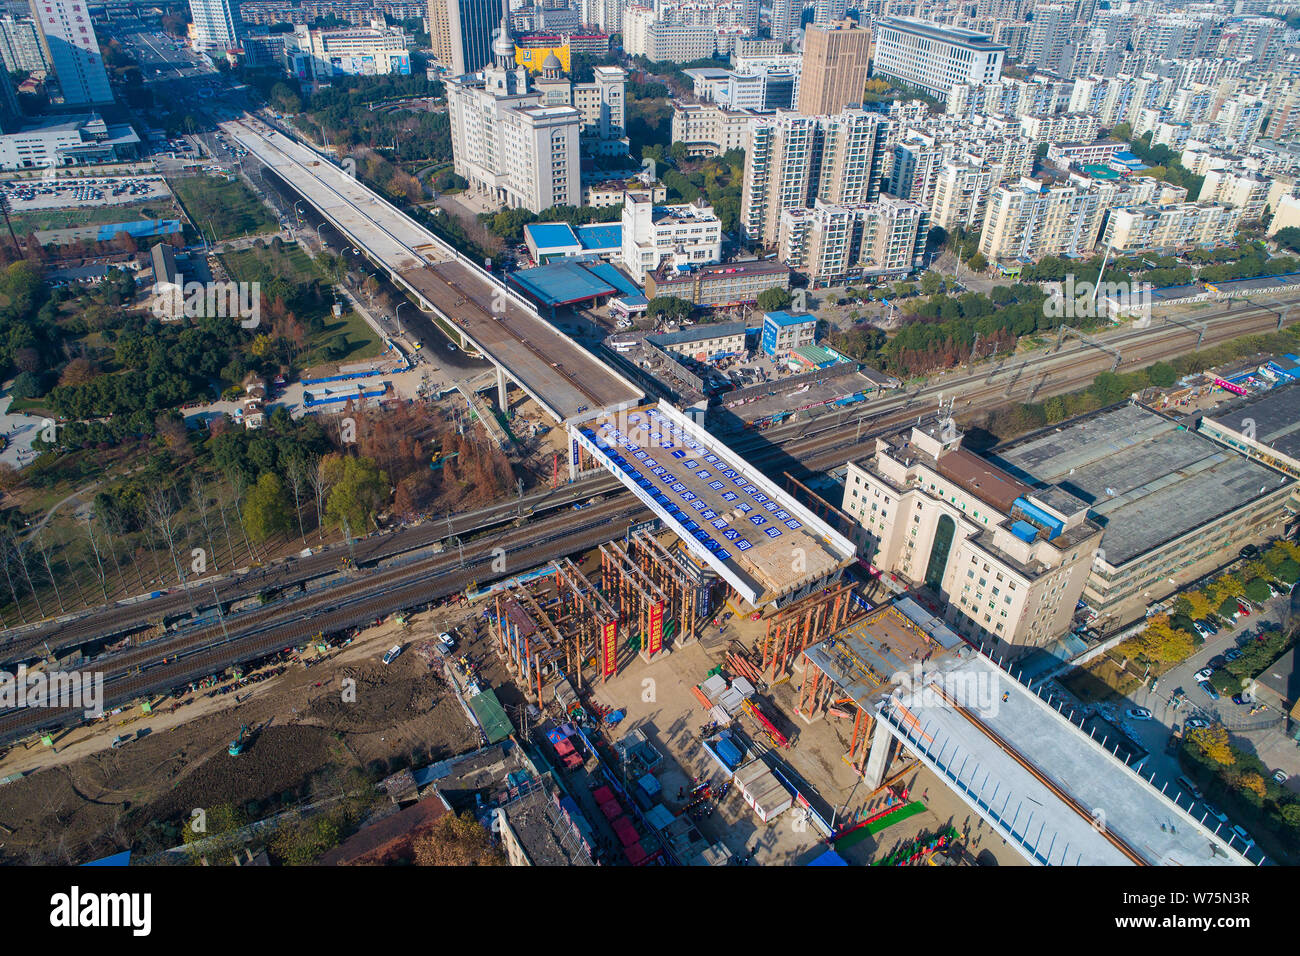 Un pont à poutre-caisson tourne dans le sens horaire sur un chemin de fer d'amarrer à la Avenue Hanjiang en construction à Wuhan, province du Hubei en Chine centrale Banque D'Images